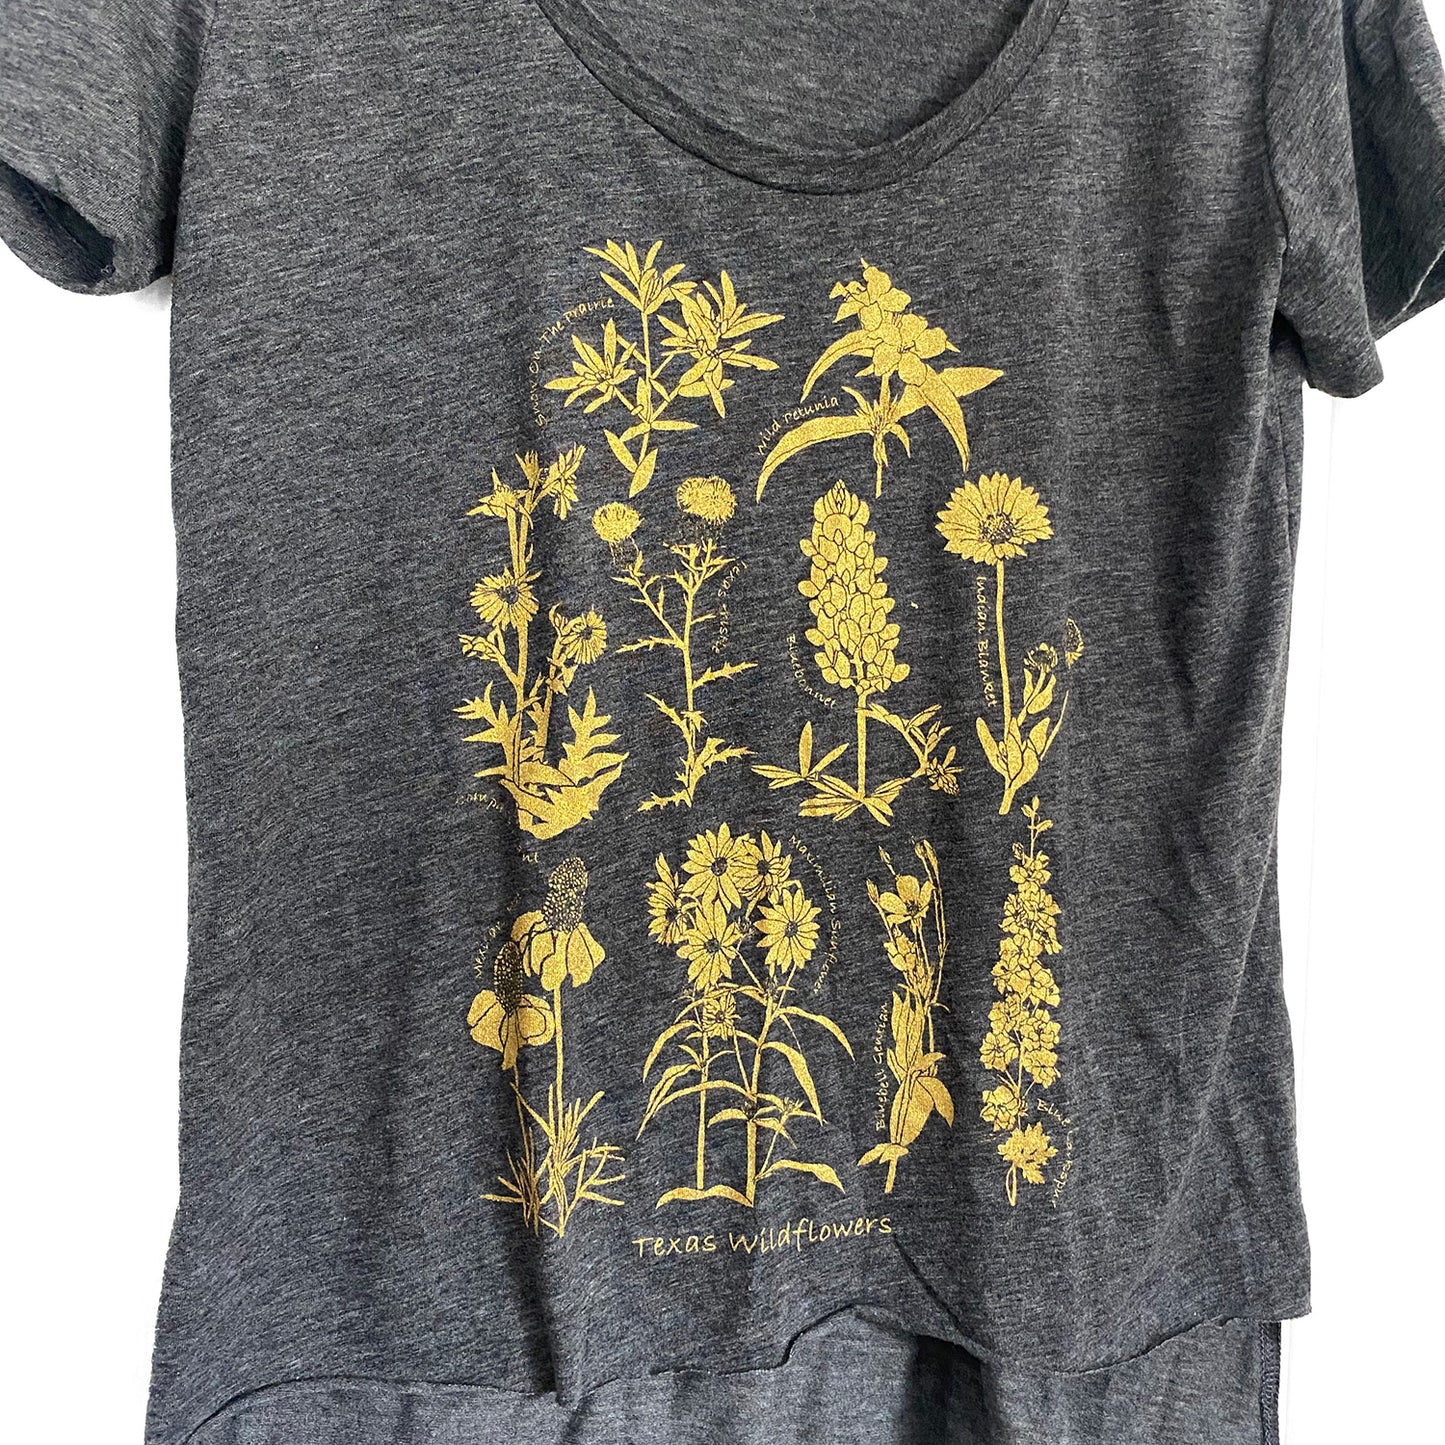 Texas Wildflowers Printed T-shirt